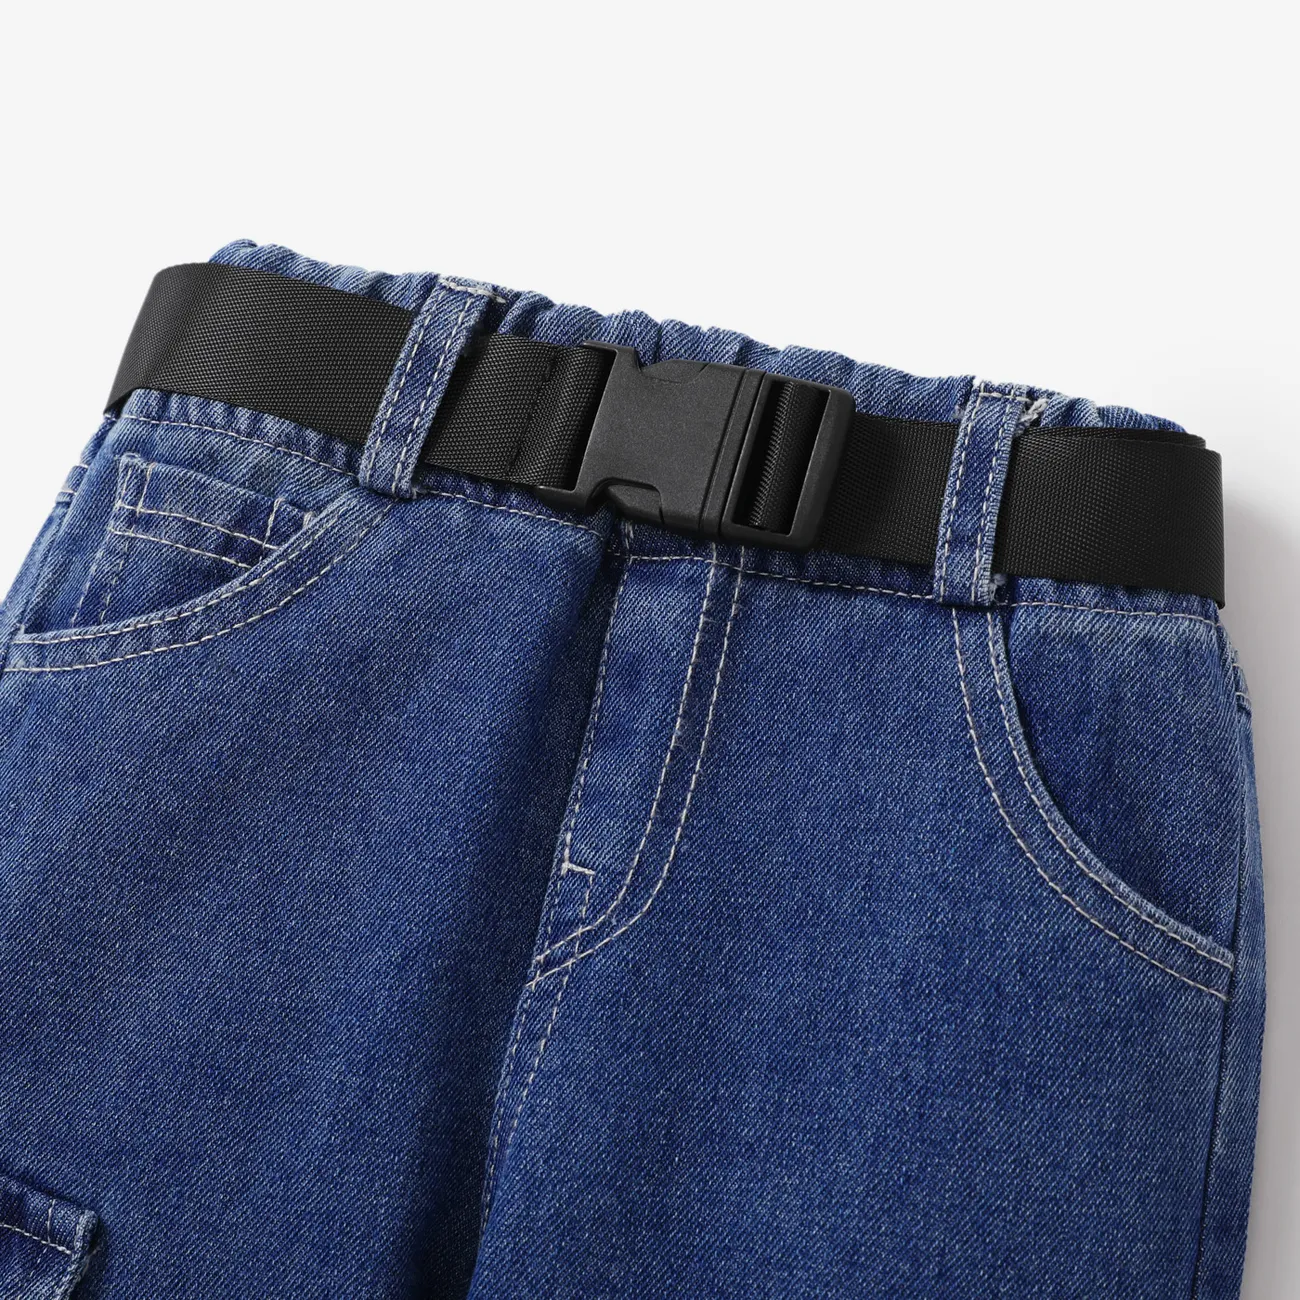 جينز 2 - 6 سنوات للجنسين جيب مخيط خارجي لون سادة أزرق big image 1